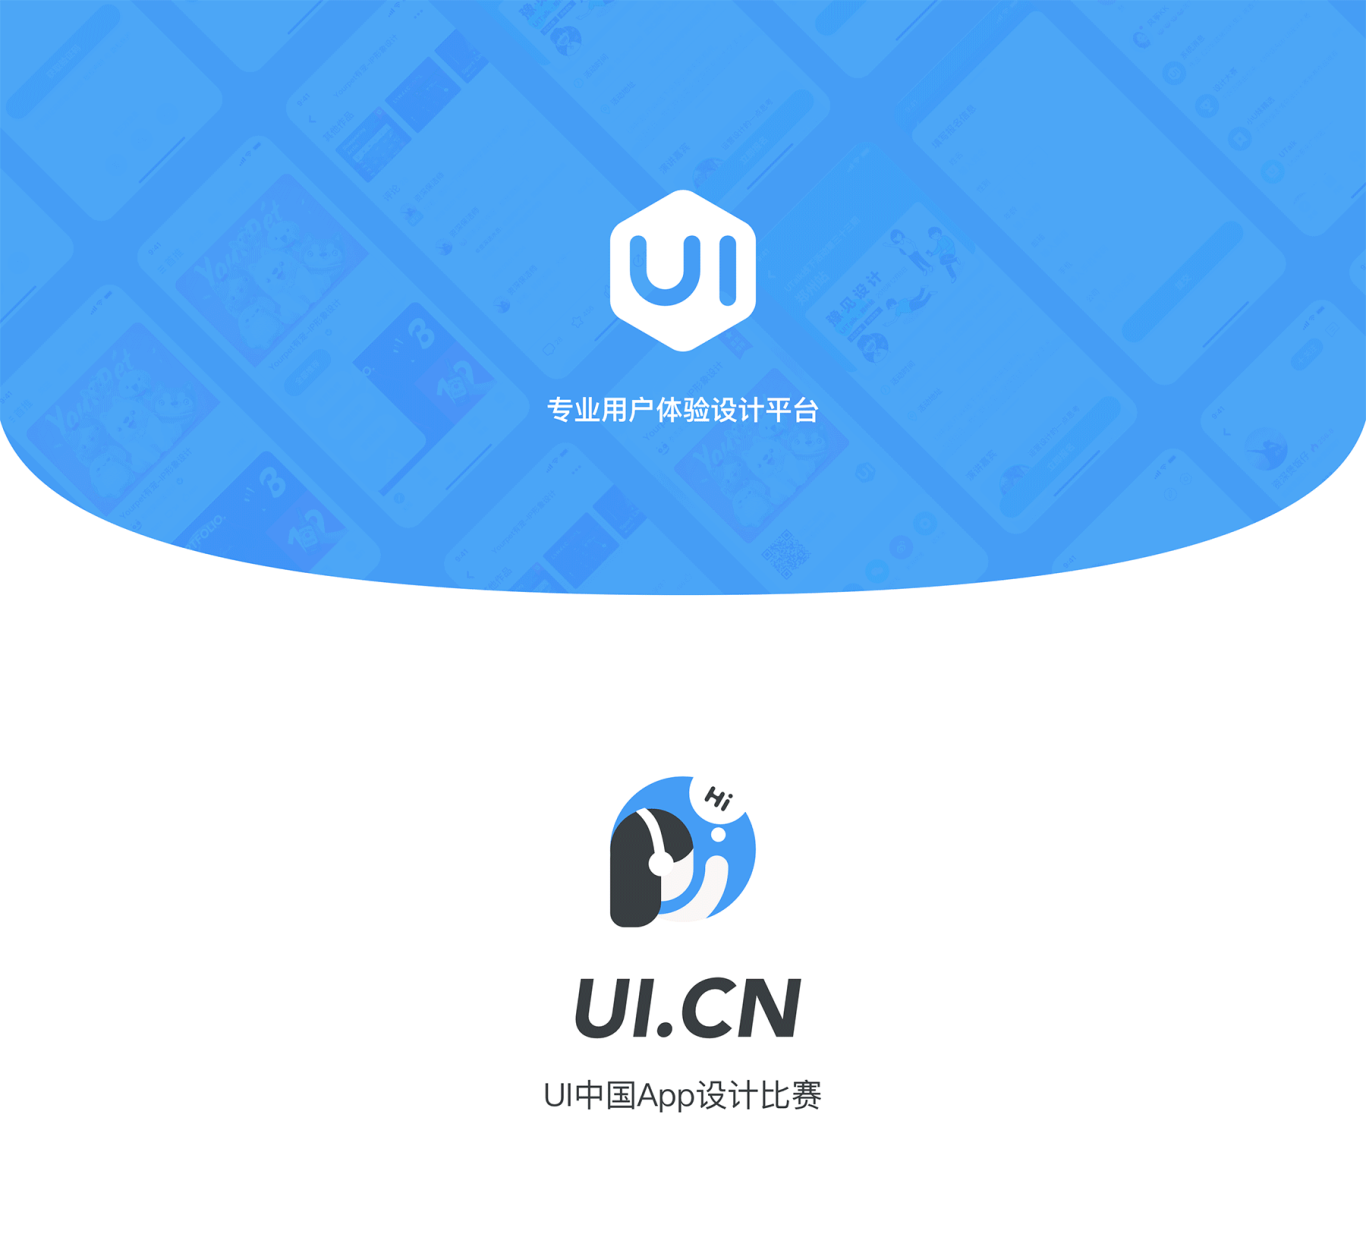 Ui中国官方App设计提案图0